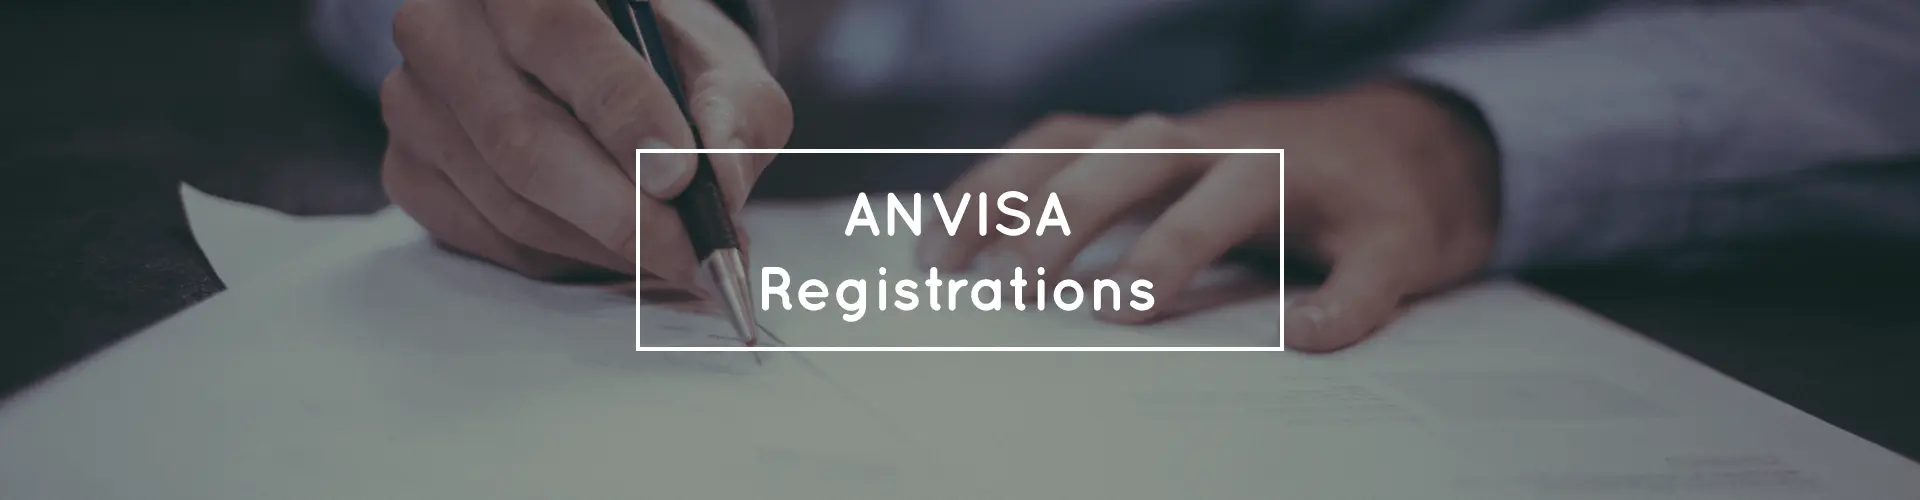 anvisa registration